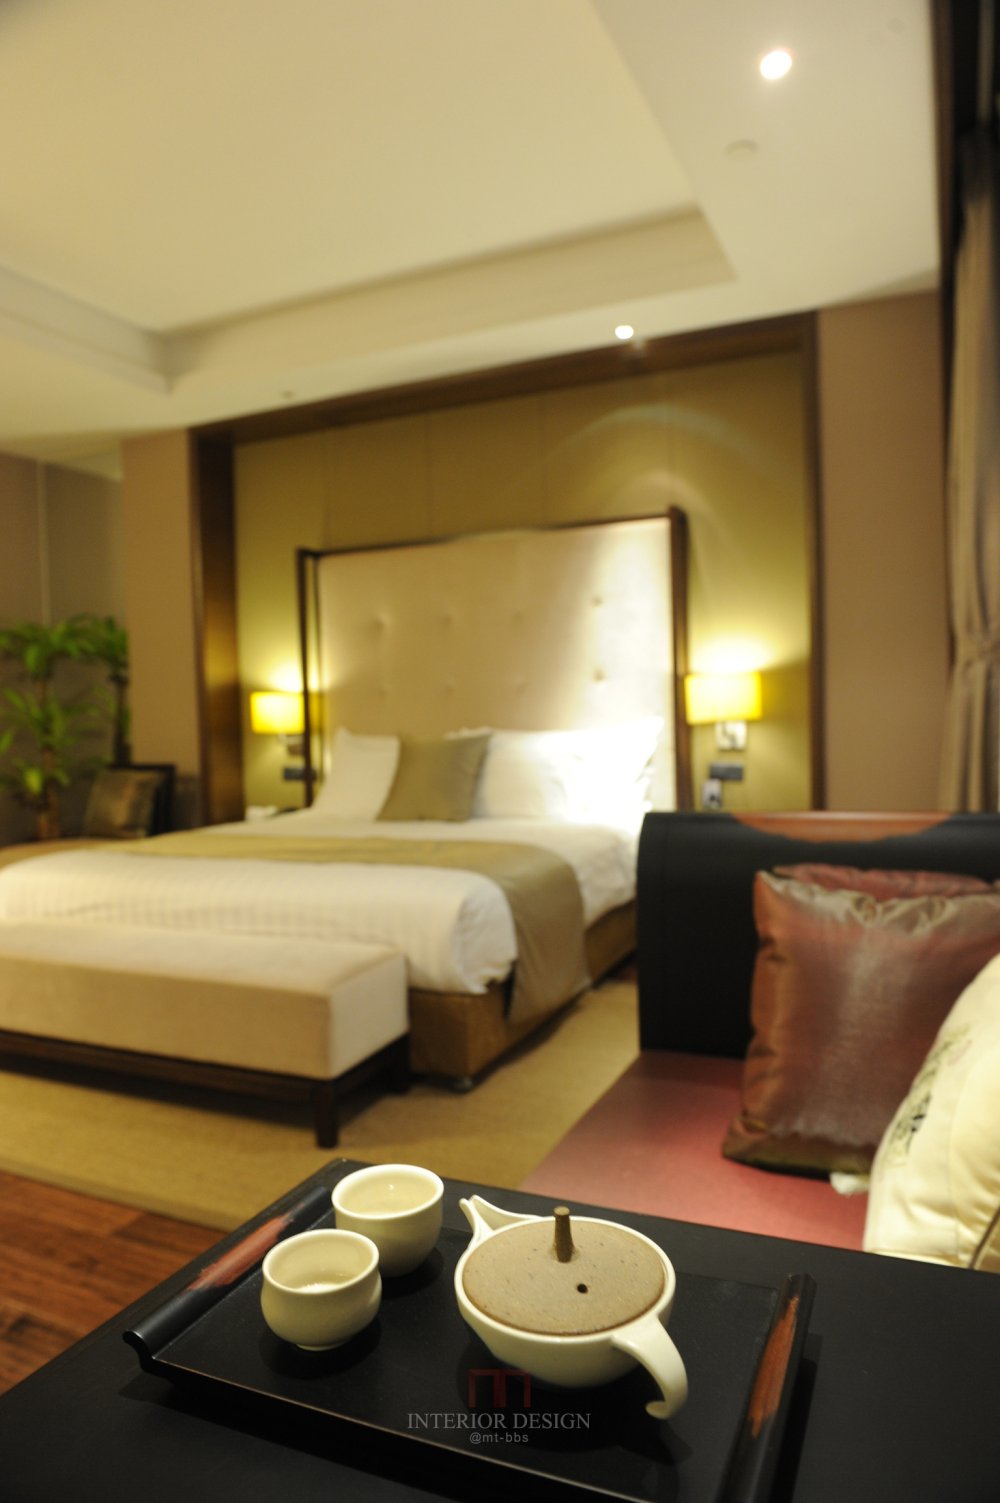 苏州平江府酒店 Hotel PingJiangFu Suzhou_41118072-H1-____1.jpg